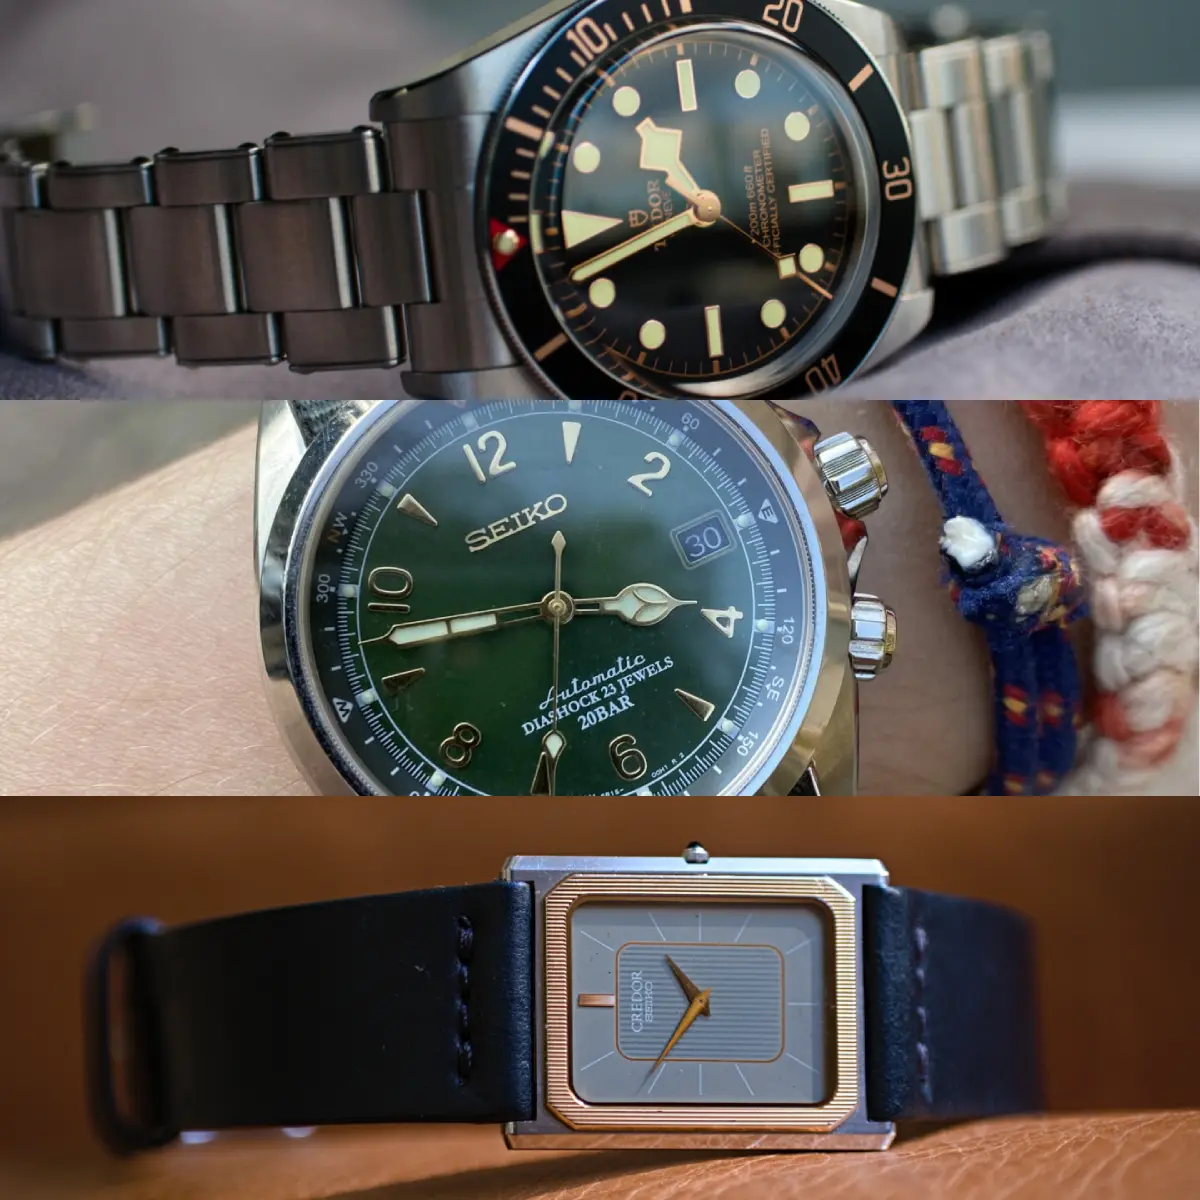 The three watches Borna wore most in 2022 - Tudor, Credor, Seiko